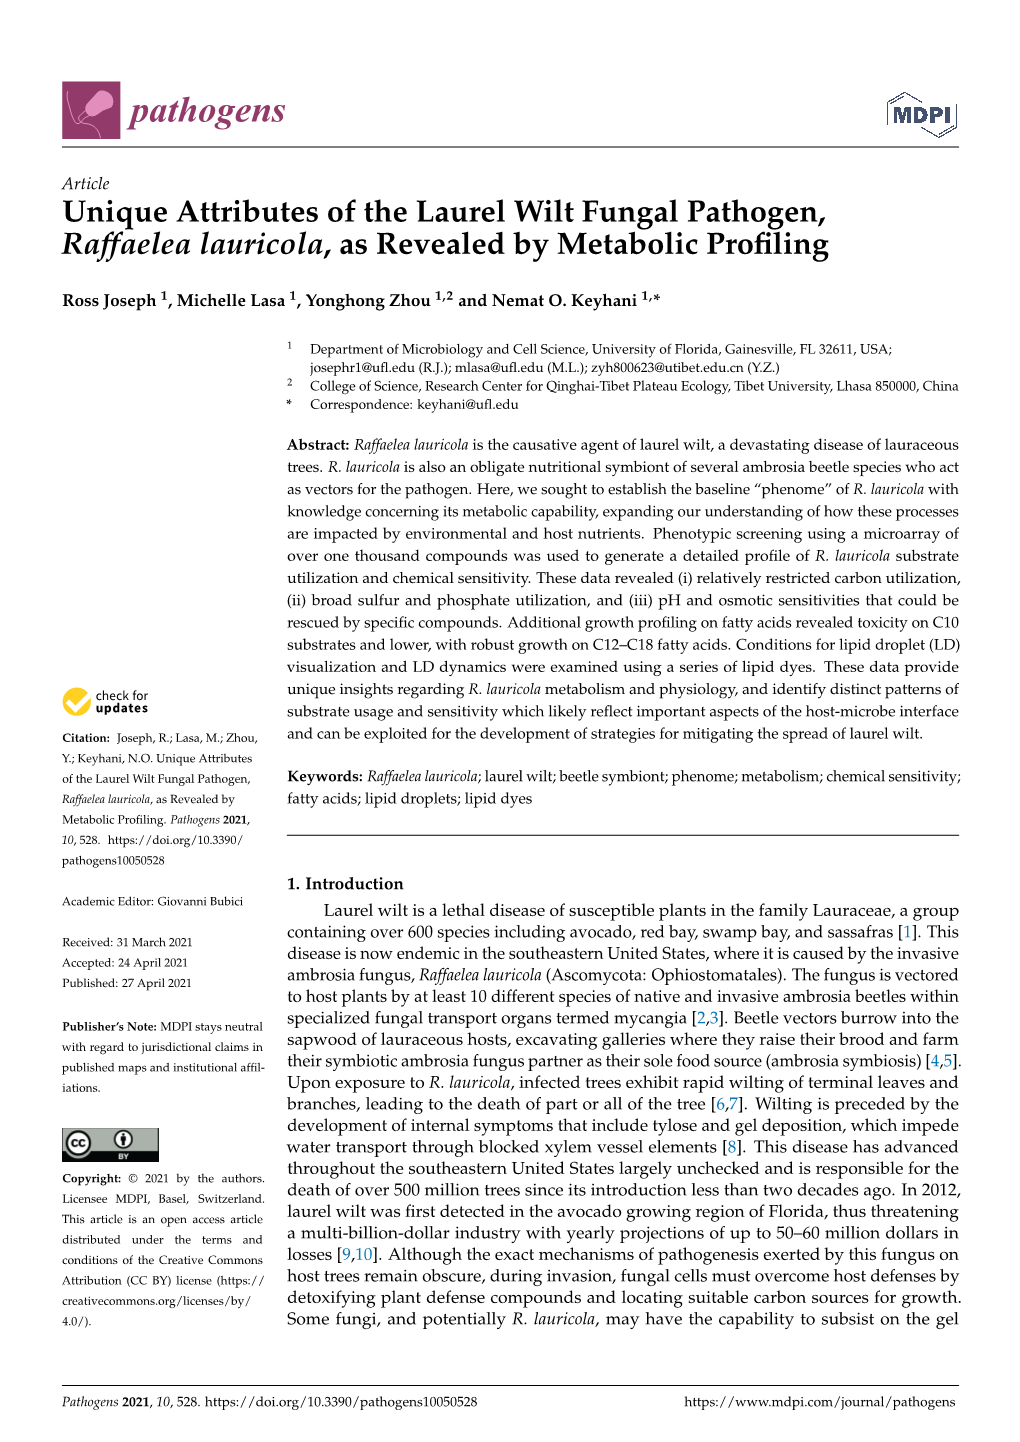 Unique Attributes of the Laurel Wilt Fungal Pathogen, Raffaelea Lauricola, As Revealed by Metabolic Profiling